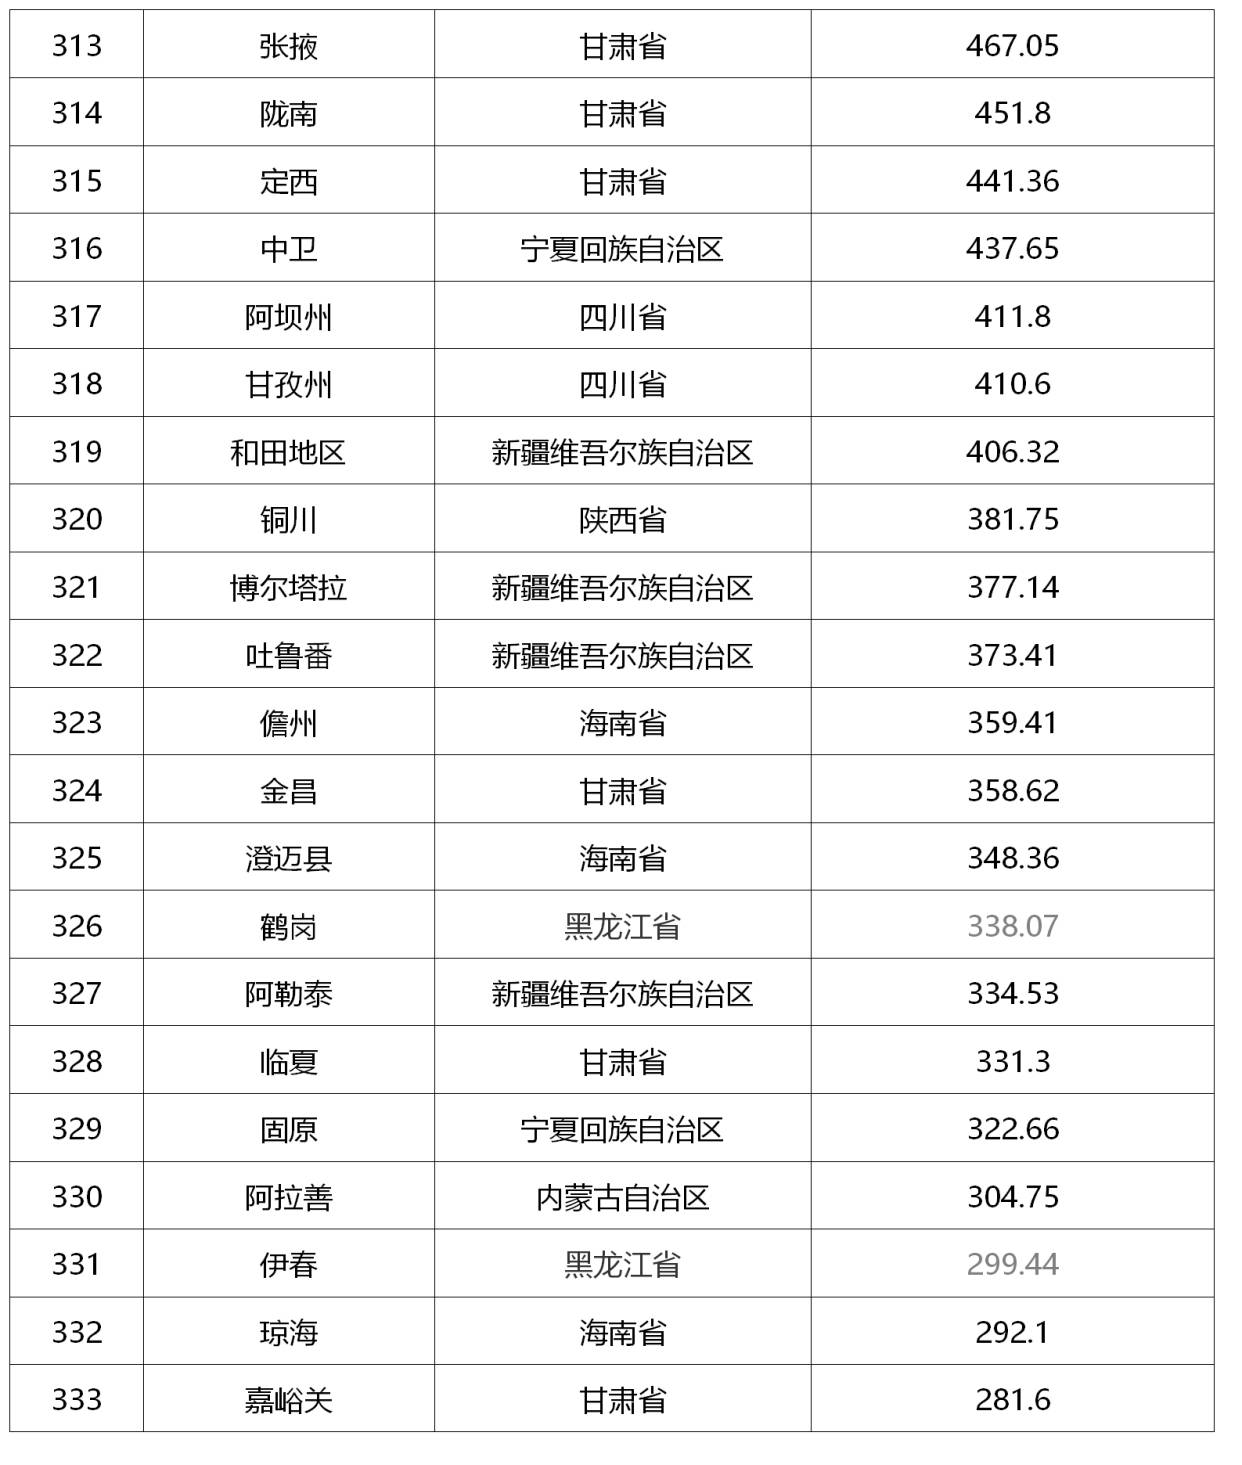 湖北縣市gdp2021排名_2021年,各省市最新GDP排行榜